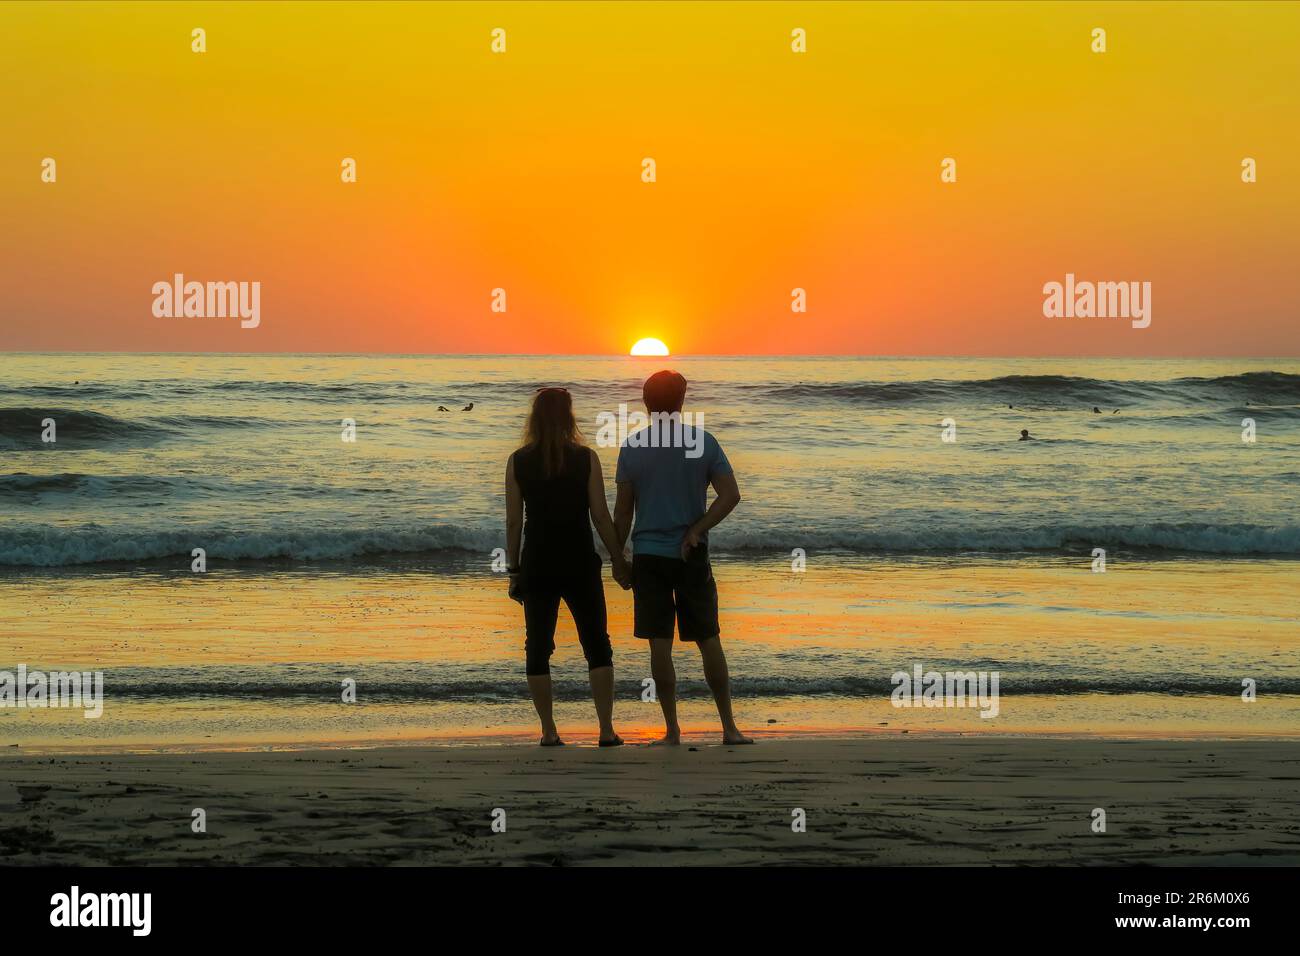 Ein Paar hält sich am Guiones Beach, wo Leute sich zum Surfen versammeln und den Sonnenuntergang beobachten, Playa Guiones, Nosara, Guanacaste, Costa Rica, Mittelamerika Stockfoto